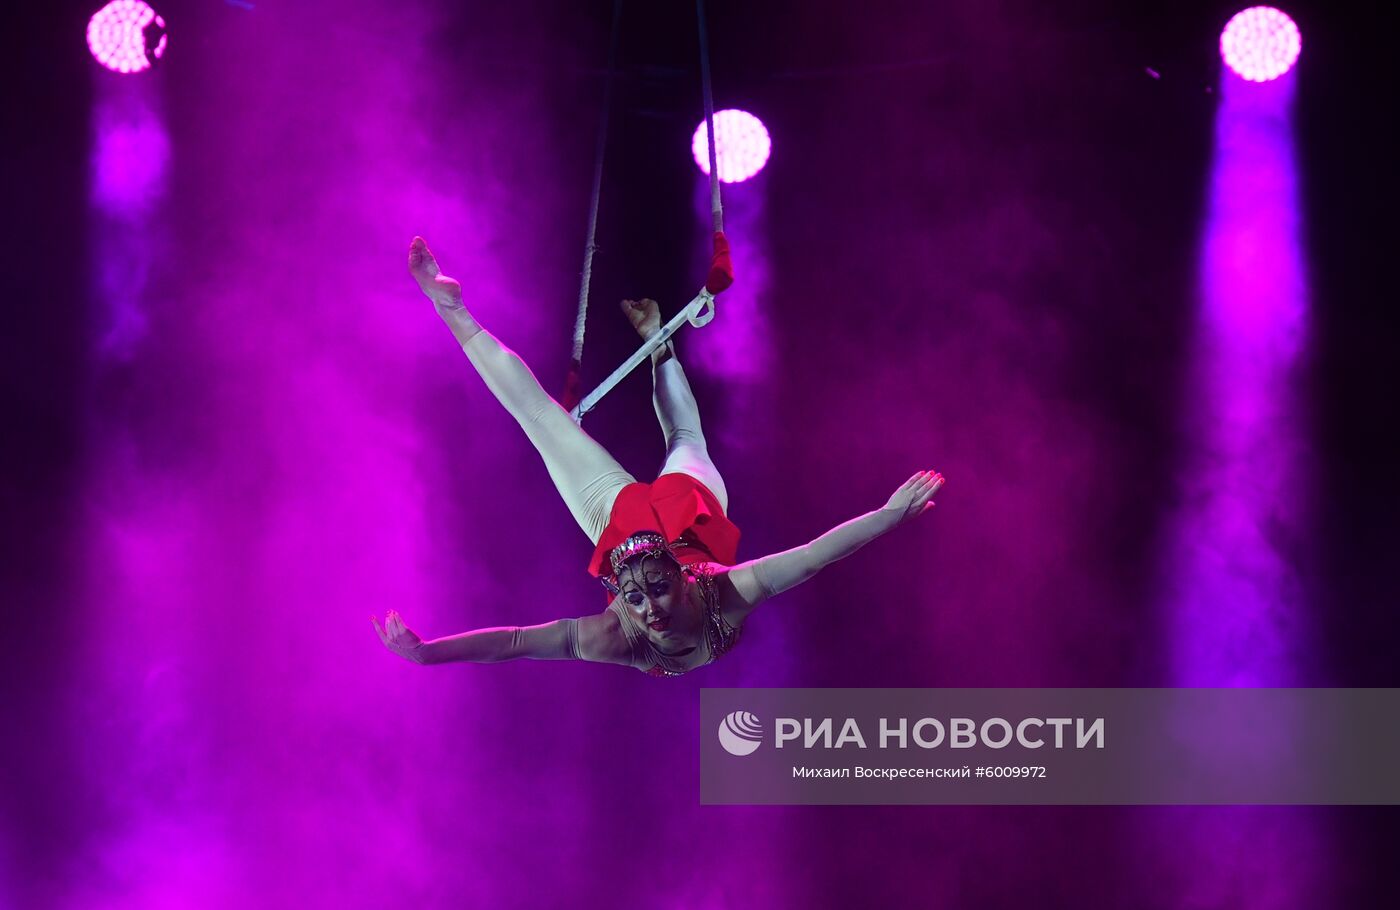 Всемирный фестиваль циркового искусства "Идол"